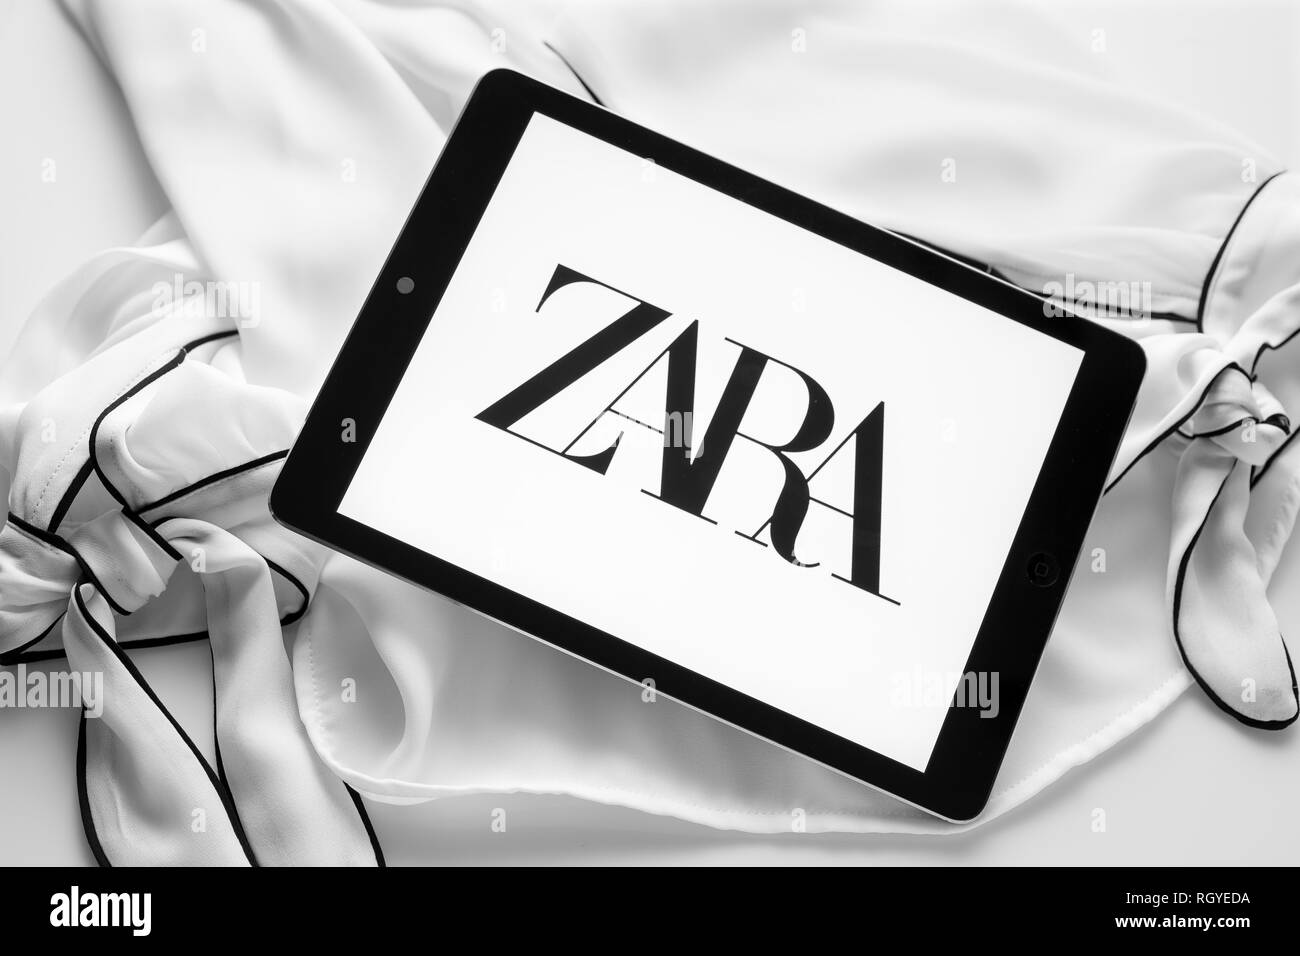 La Galice, Espagne ; 30 janvier 2019 : Zara nouveau logo. Tablette avec nouveau logo police curvy sur noir et chemisier blanc Banque D'Images